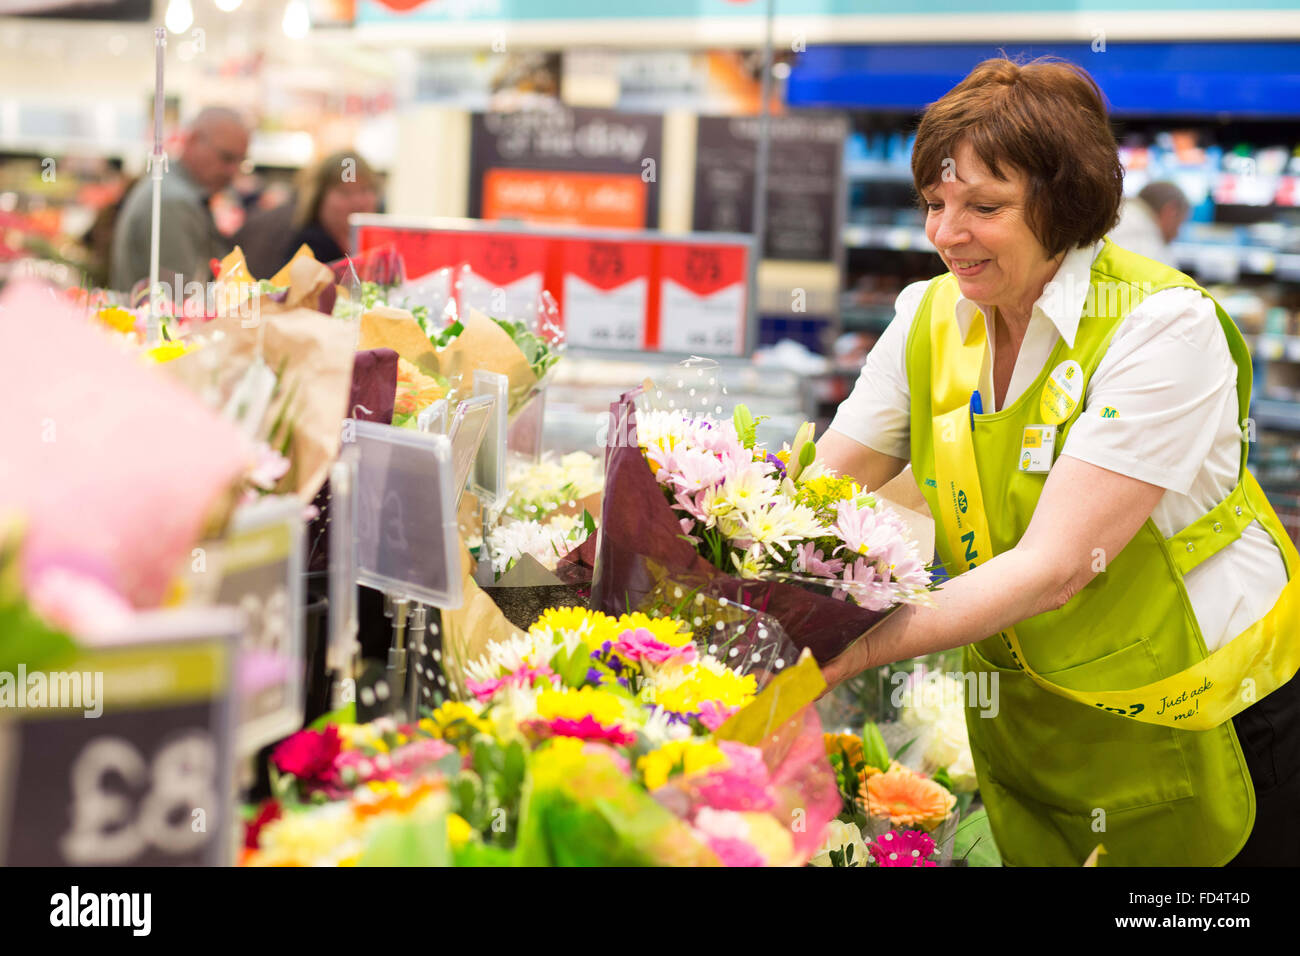 Supermarché Morrisons. Une femme travaillant dans la section fleuriste Banque D'Images